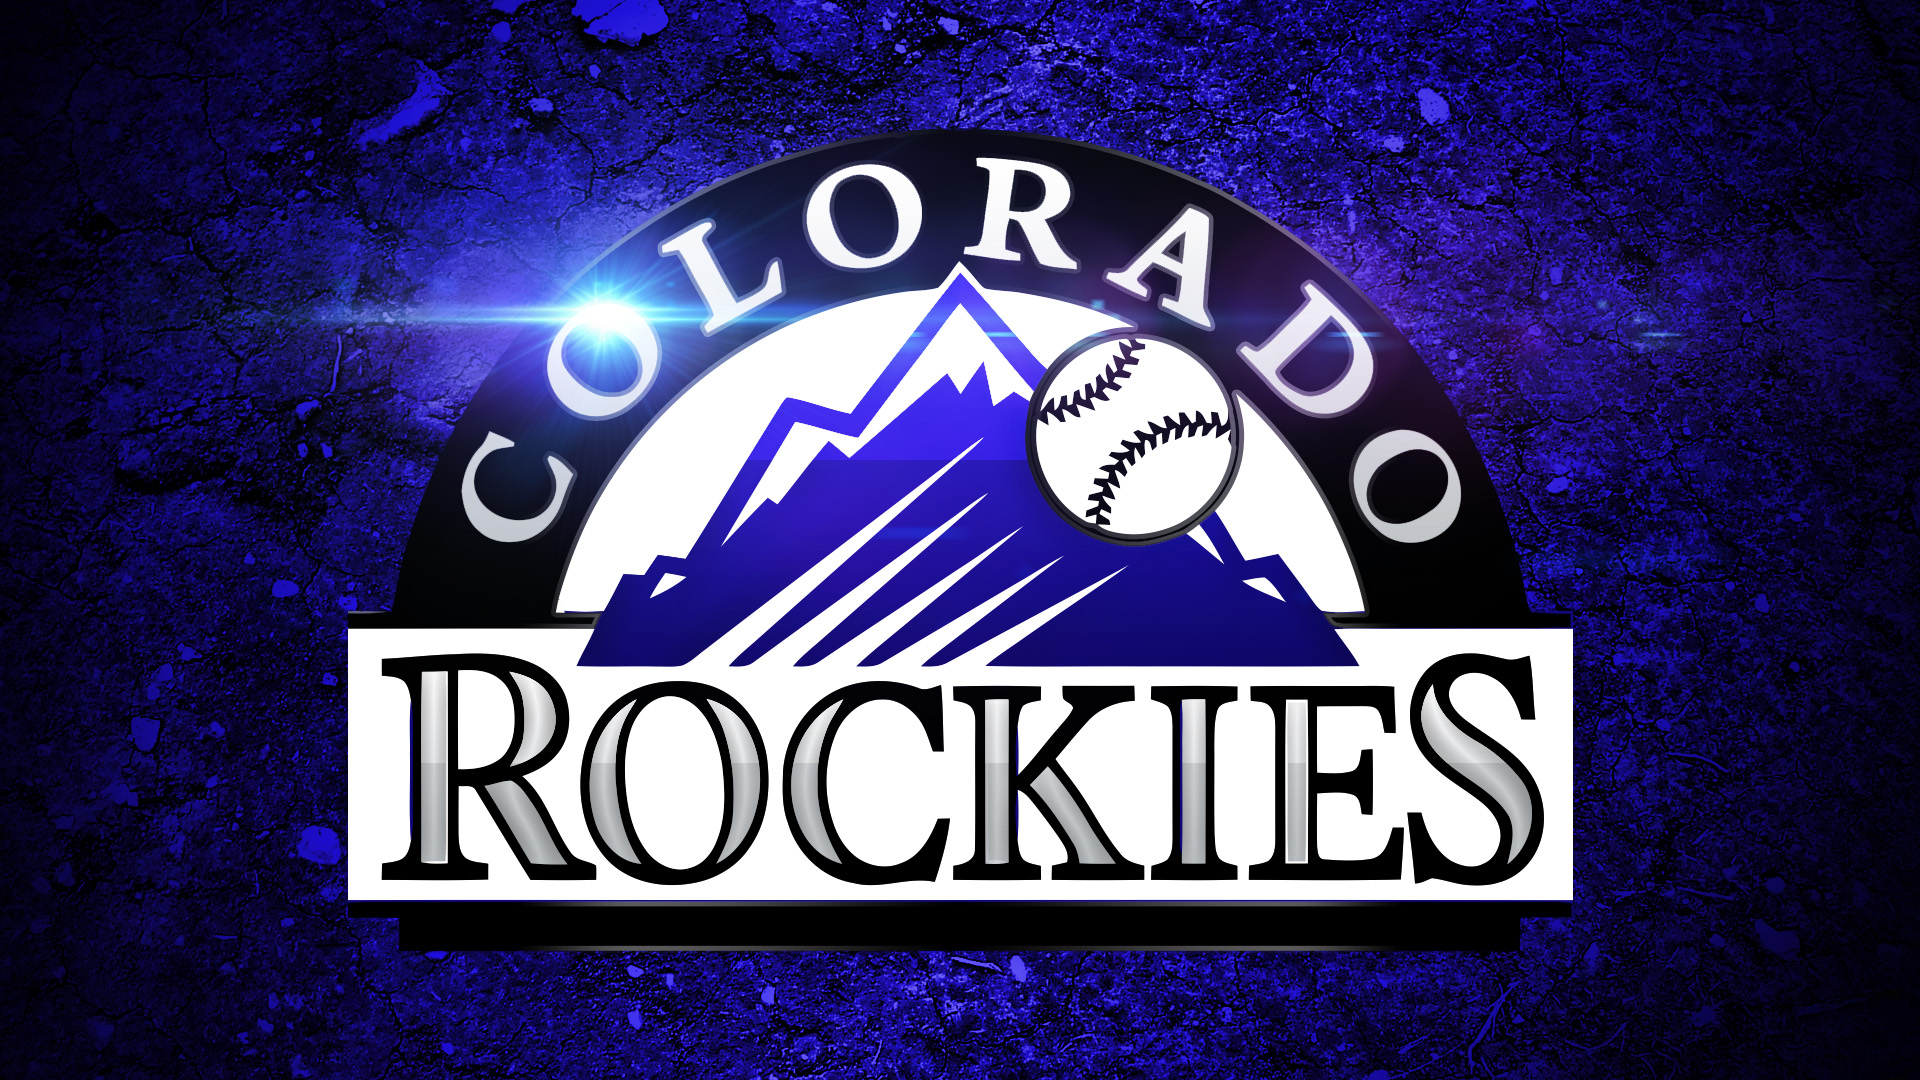 Colorado Rockies Baseball Mlb Wallpaper Background